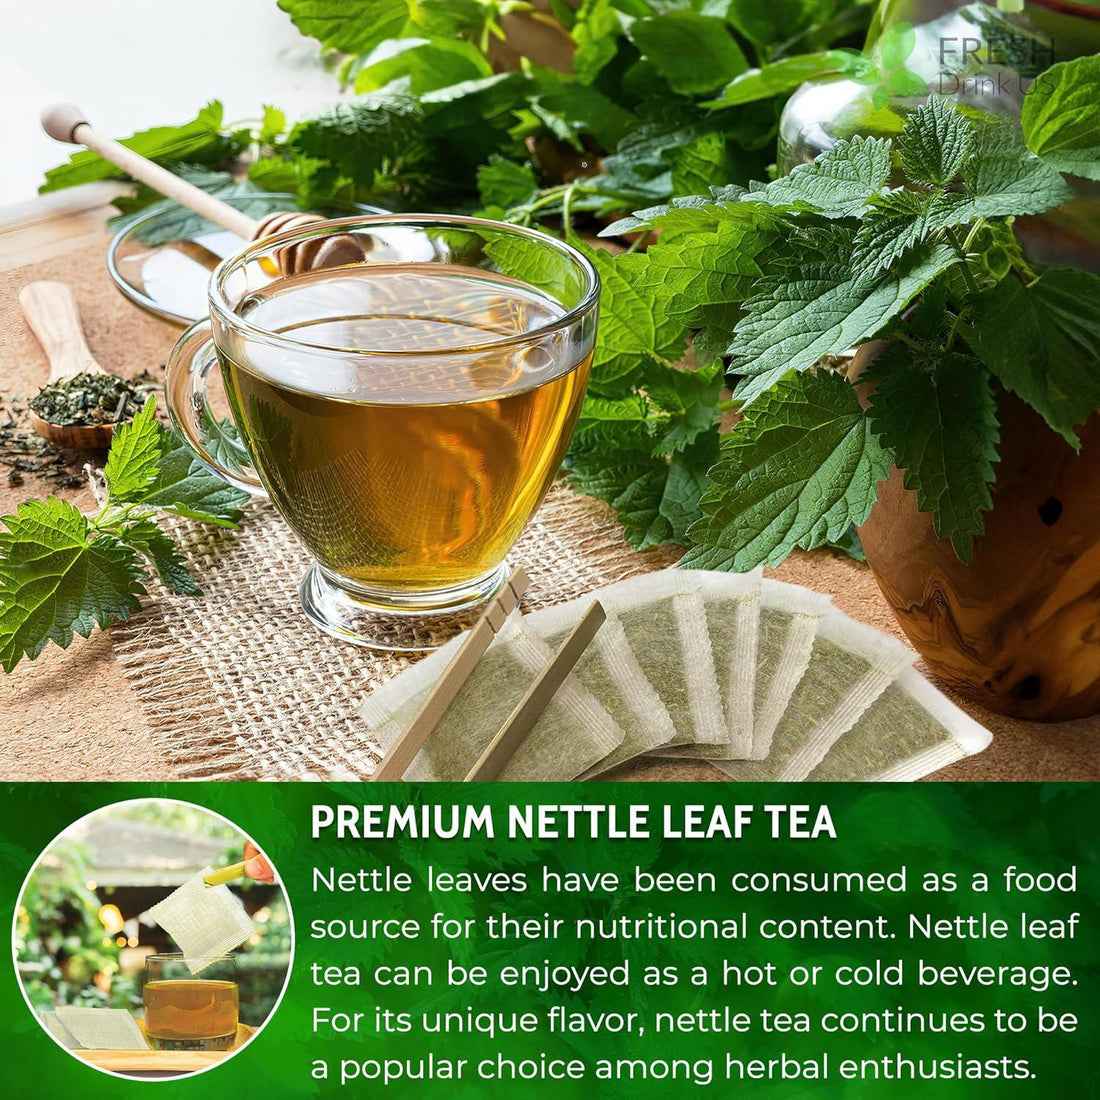 Premium Nettle Leaf Tea Bags, 100% Natural & Pure, Stinging Nettle Leaf Tea, Nettle Leaf Tea, Burn Nettle, Stinging Nettle, Nettle Tea, Stinger Tea, No Sugar/Caffeine & Gluten, Vegan - FreshDrinkUS - Natural and Premium Herbal Tea